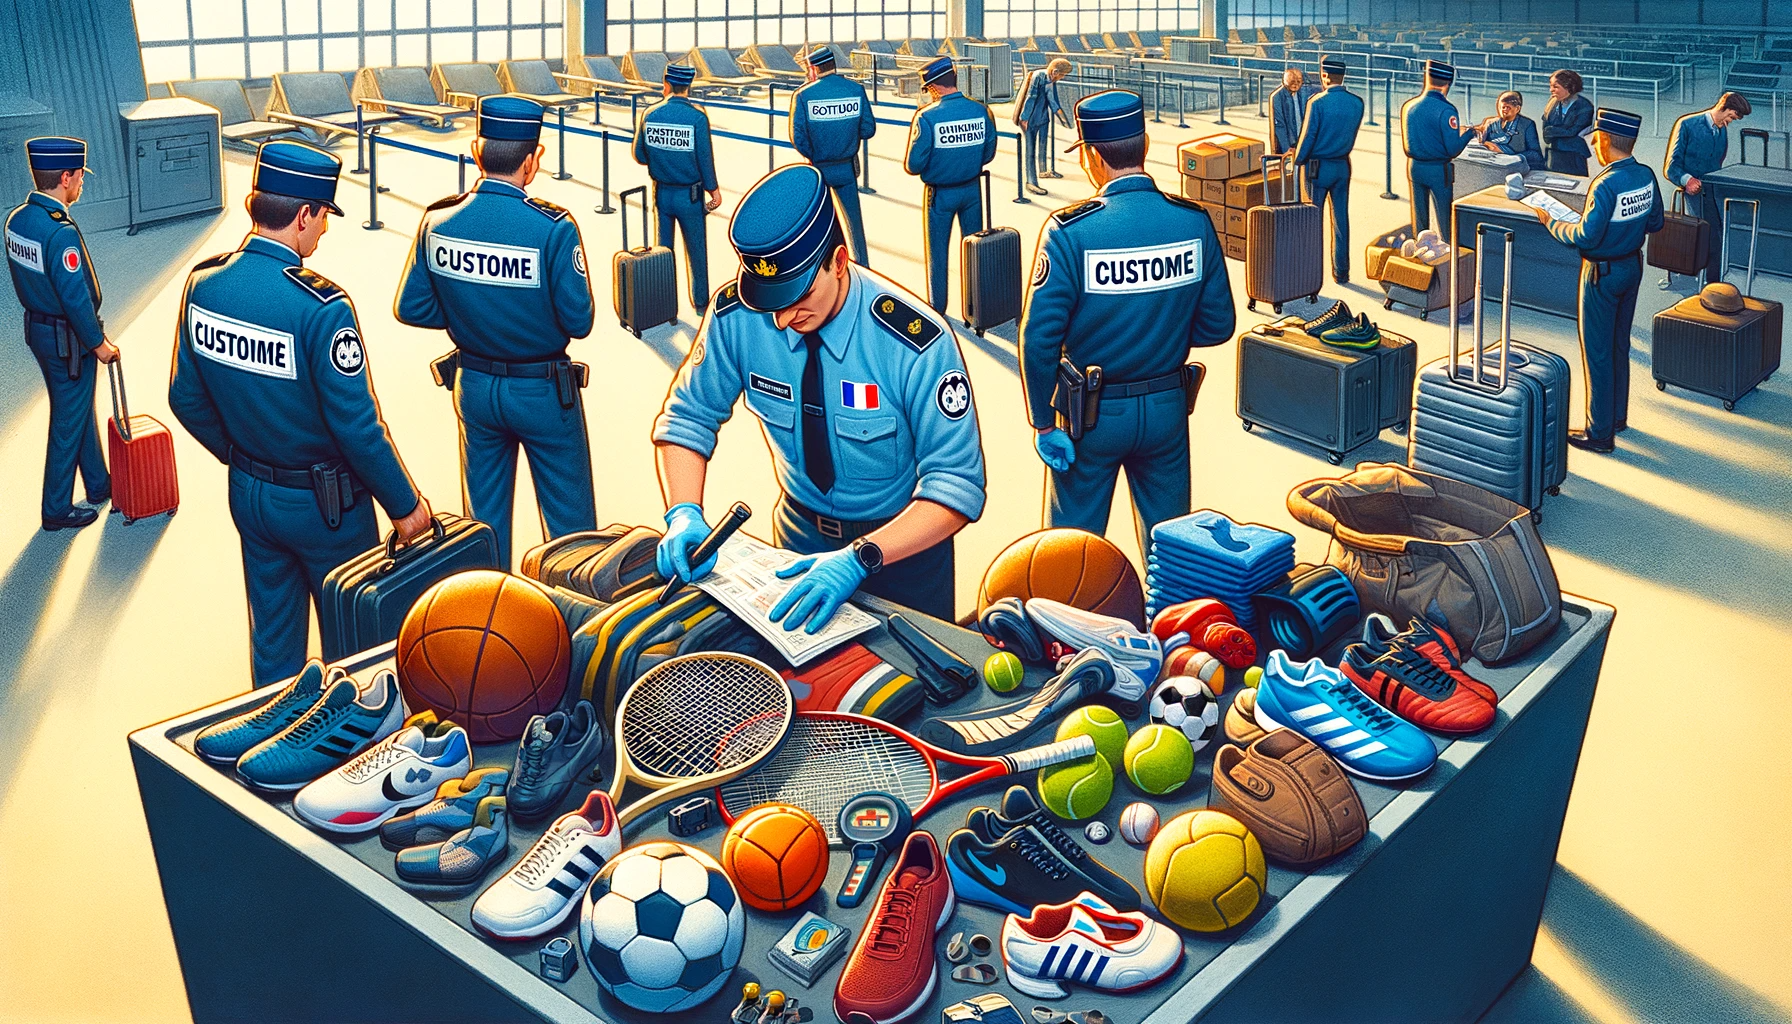 Un groupe de policiers debout à côté d’une valise remplie d’équipements sportifs, fournis par un fournisseur d’articles de sport.